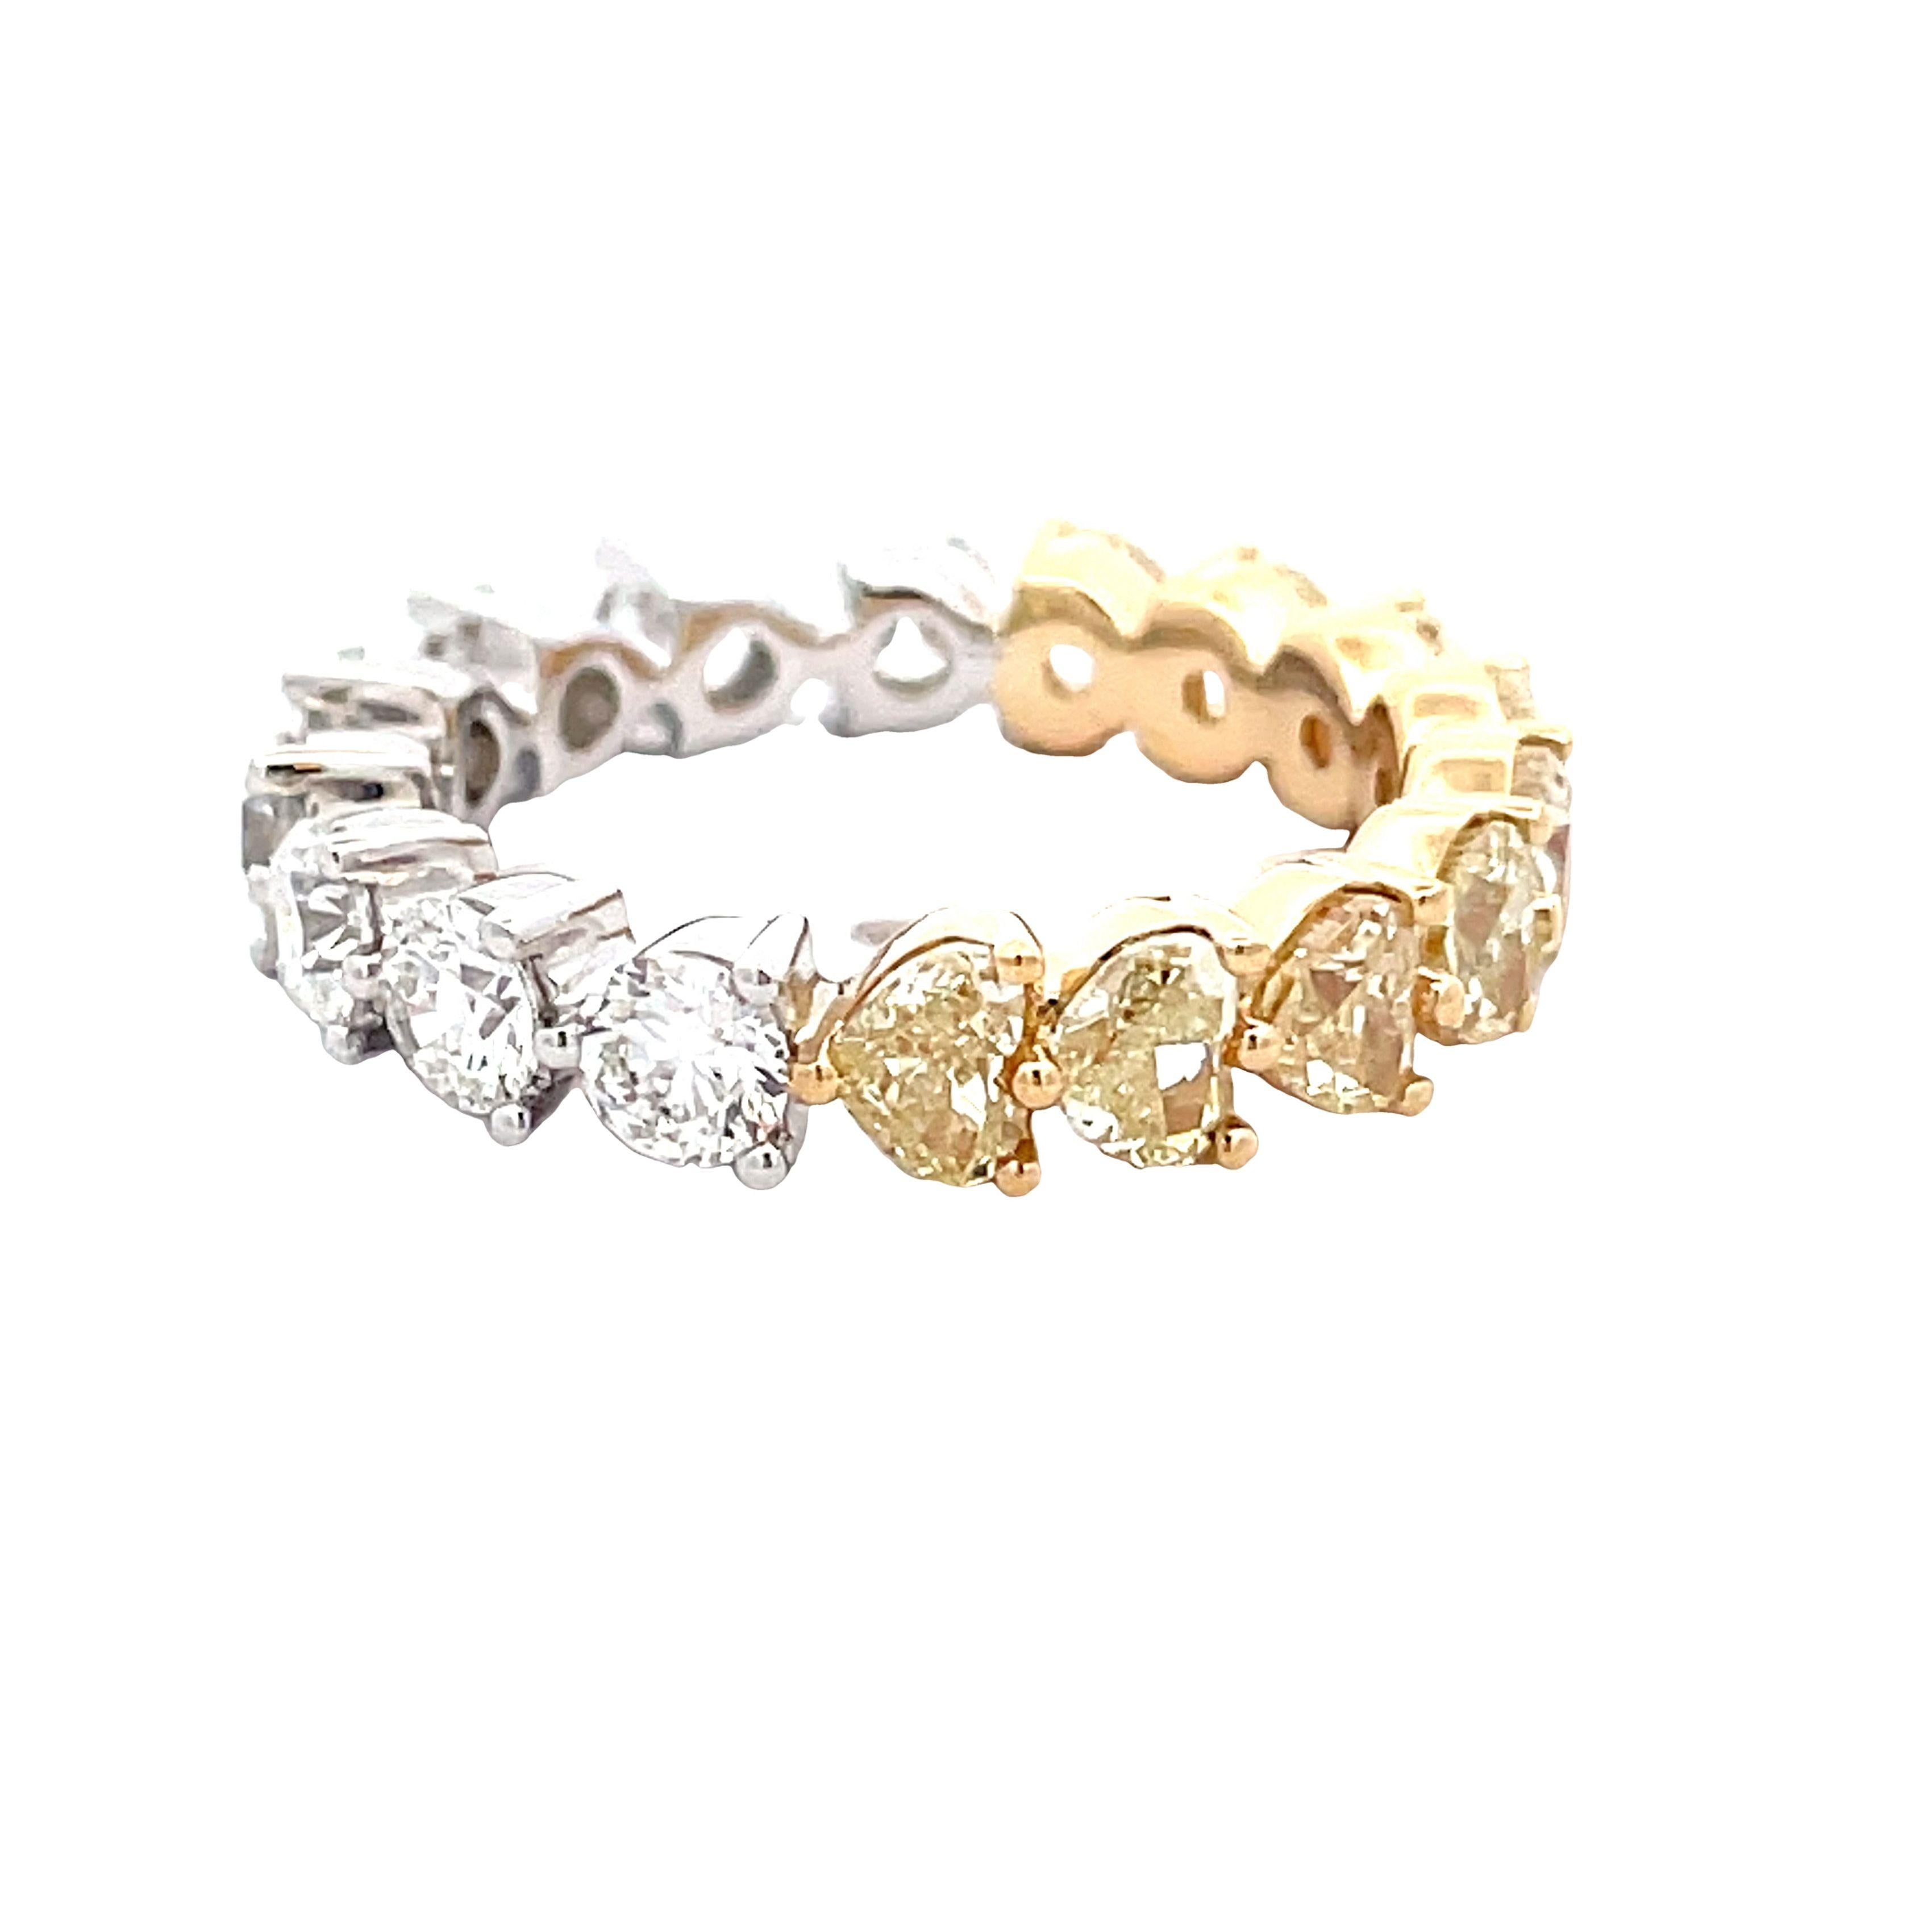 Strahlen Sie Liebe und Luxus aus mit unserem 18KY/W Ring mit einem runden weißen Diamanten von 1,79 Karat und einem herzförmigen gelben Diamanten von 2,46 Karat - eine faszinierende Verschmelzung von Eleganz und Zuneigung.